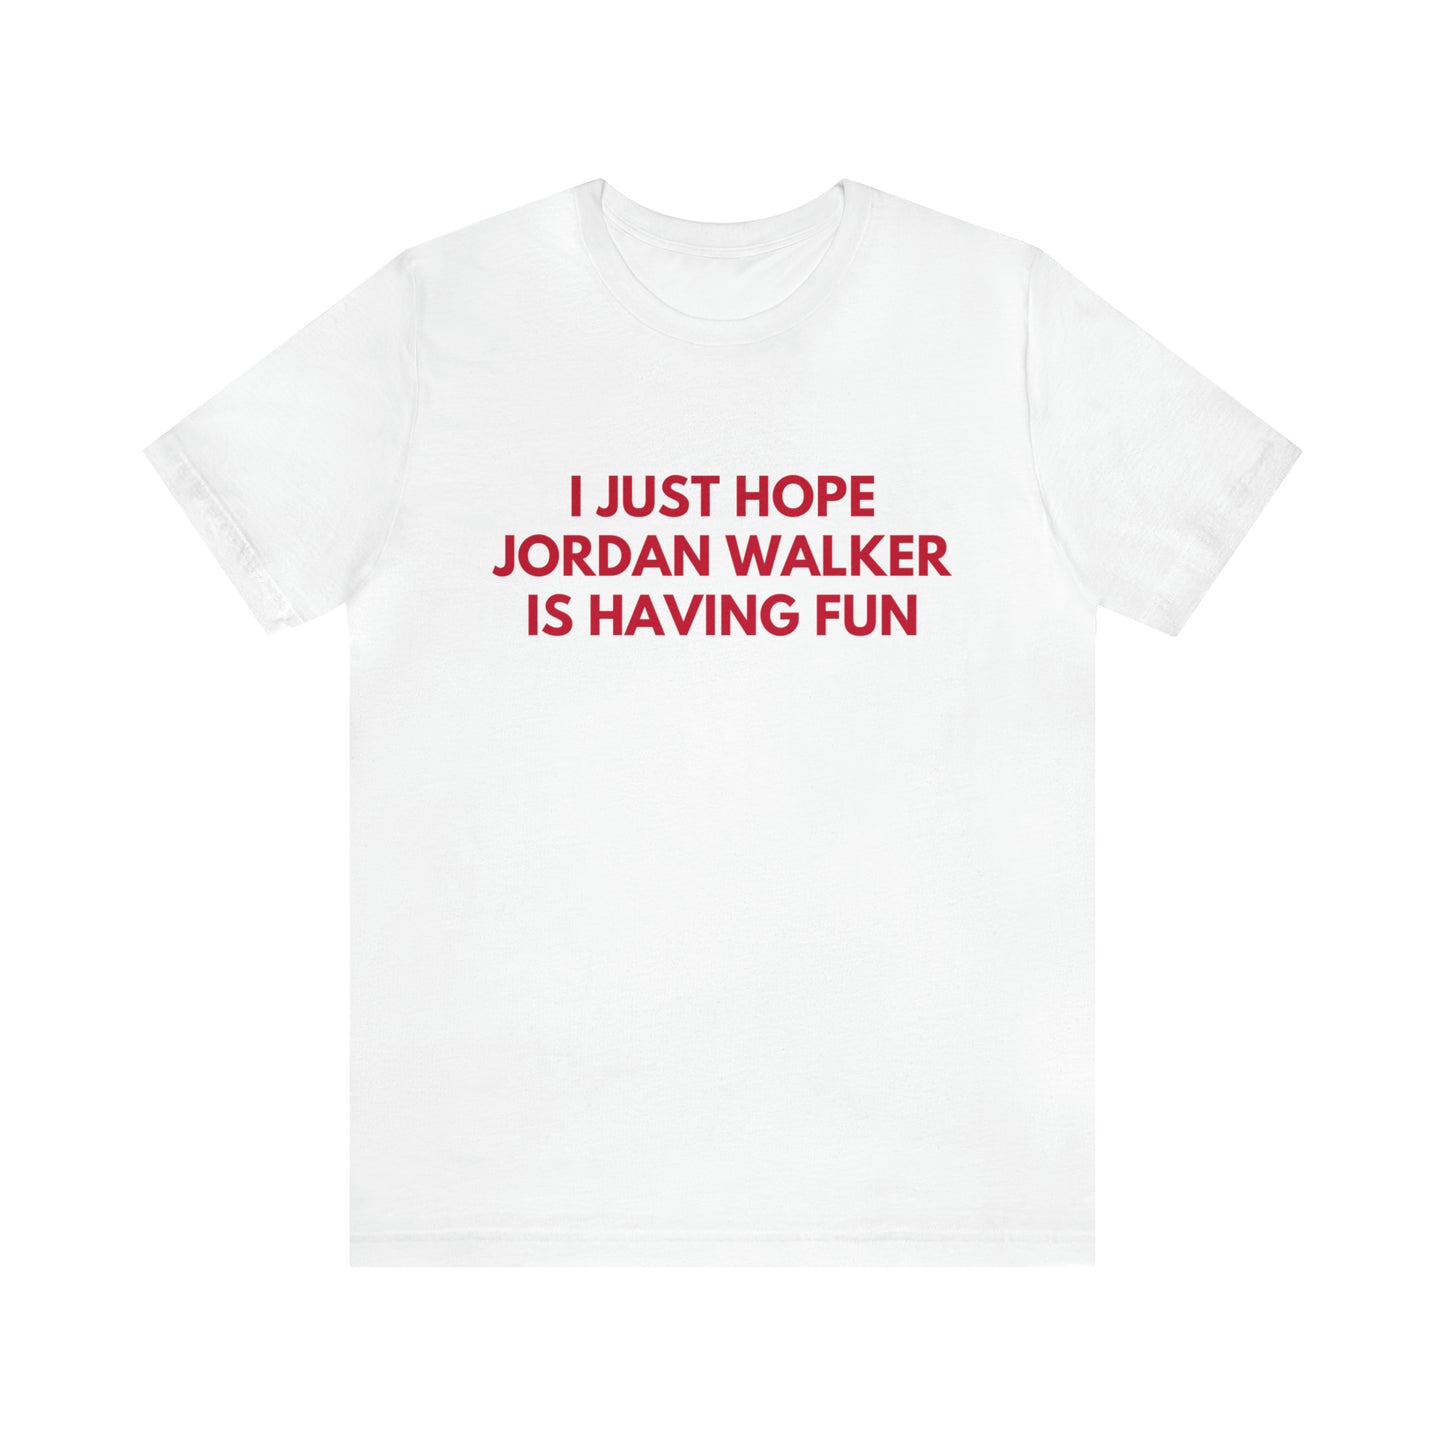 Jordan Walker Having Fun - Unisex T-shirt